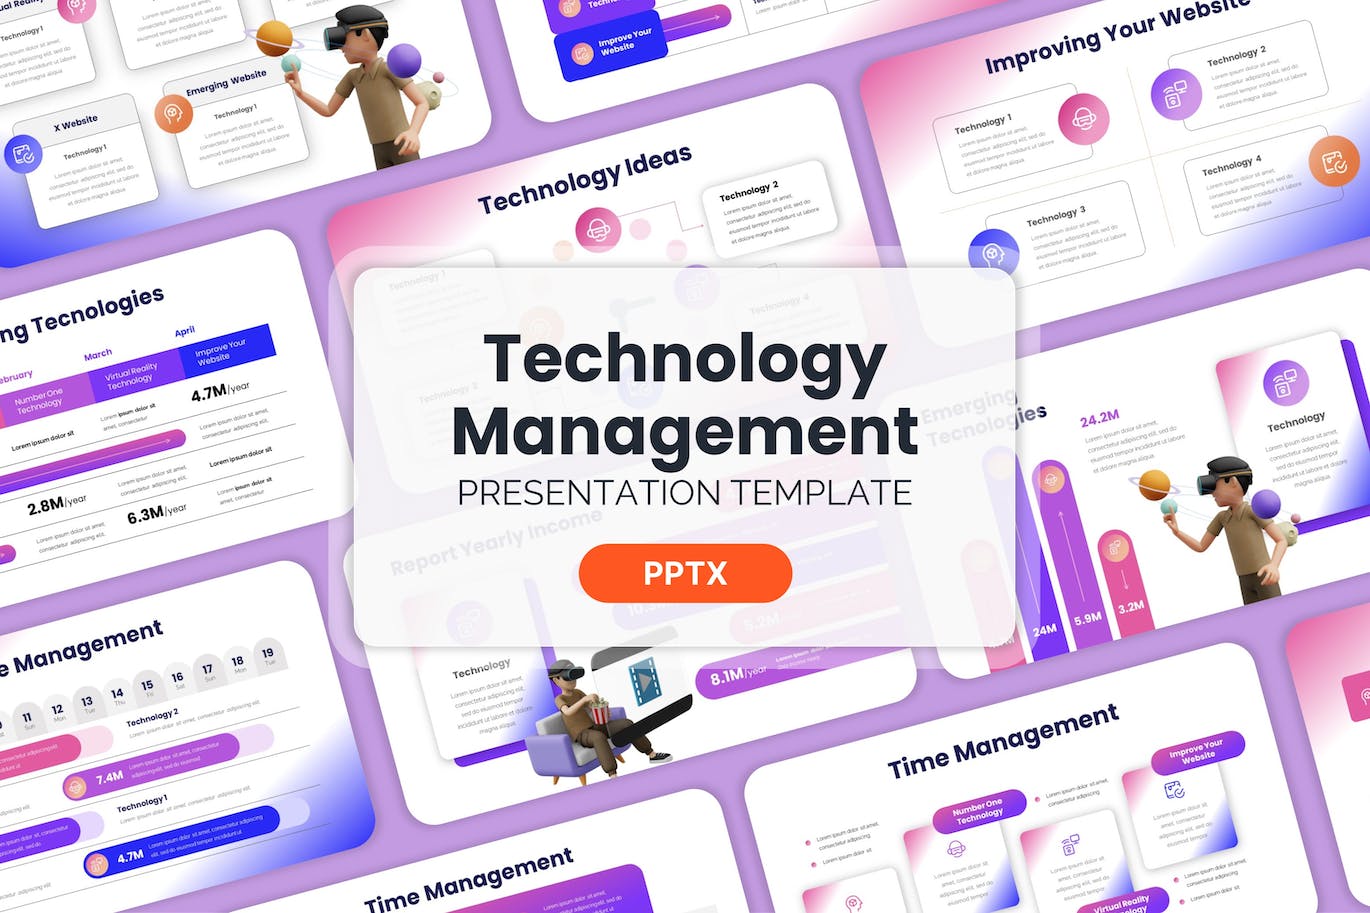 技术管理 – PPT模版 (PPTX)